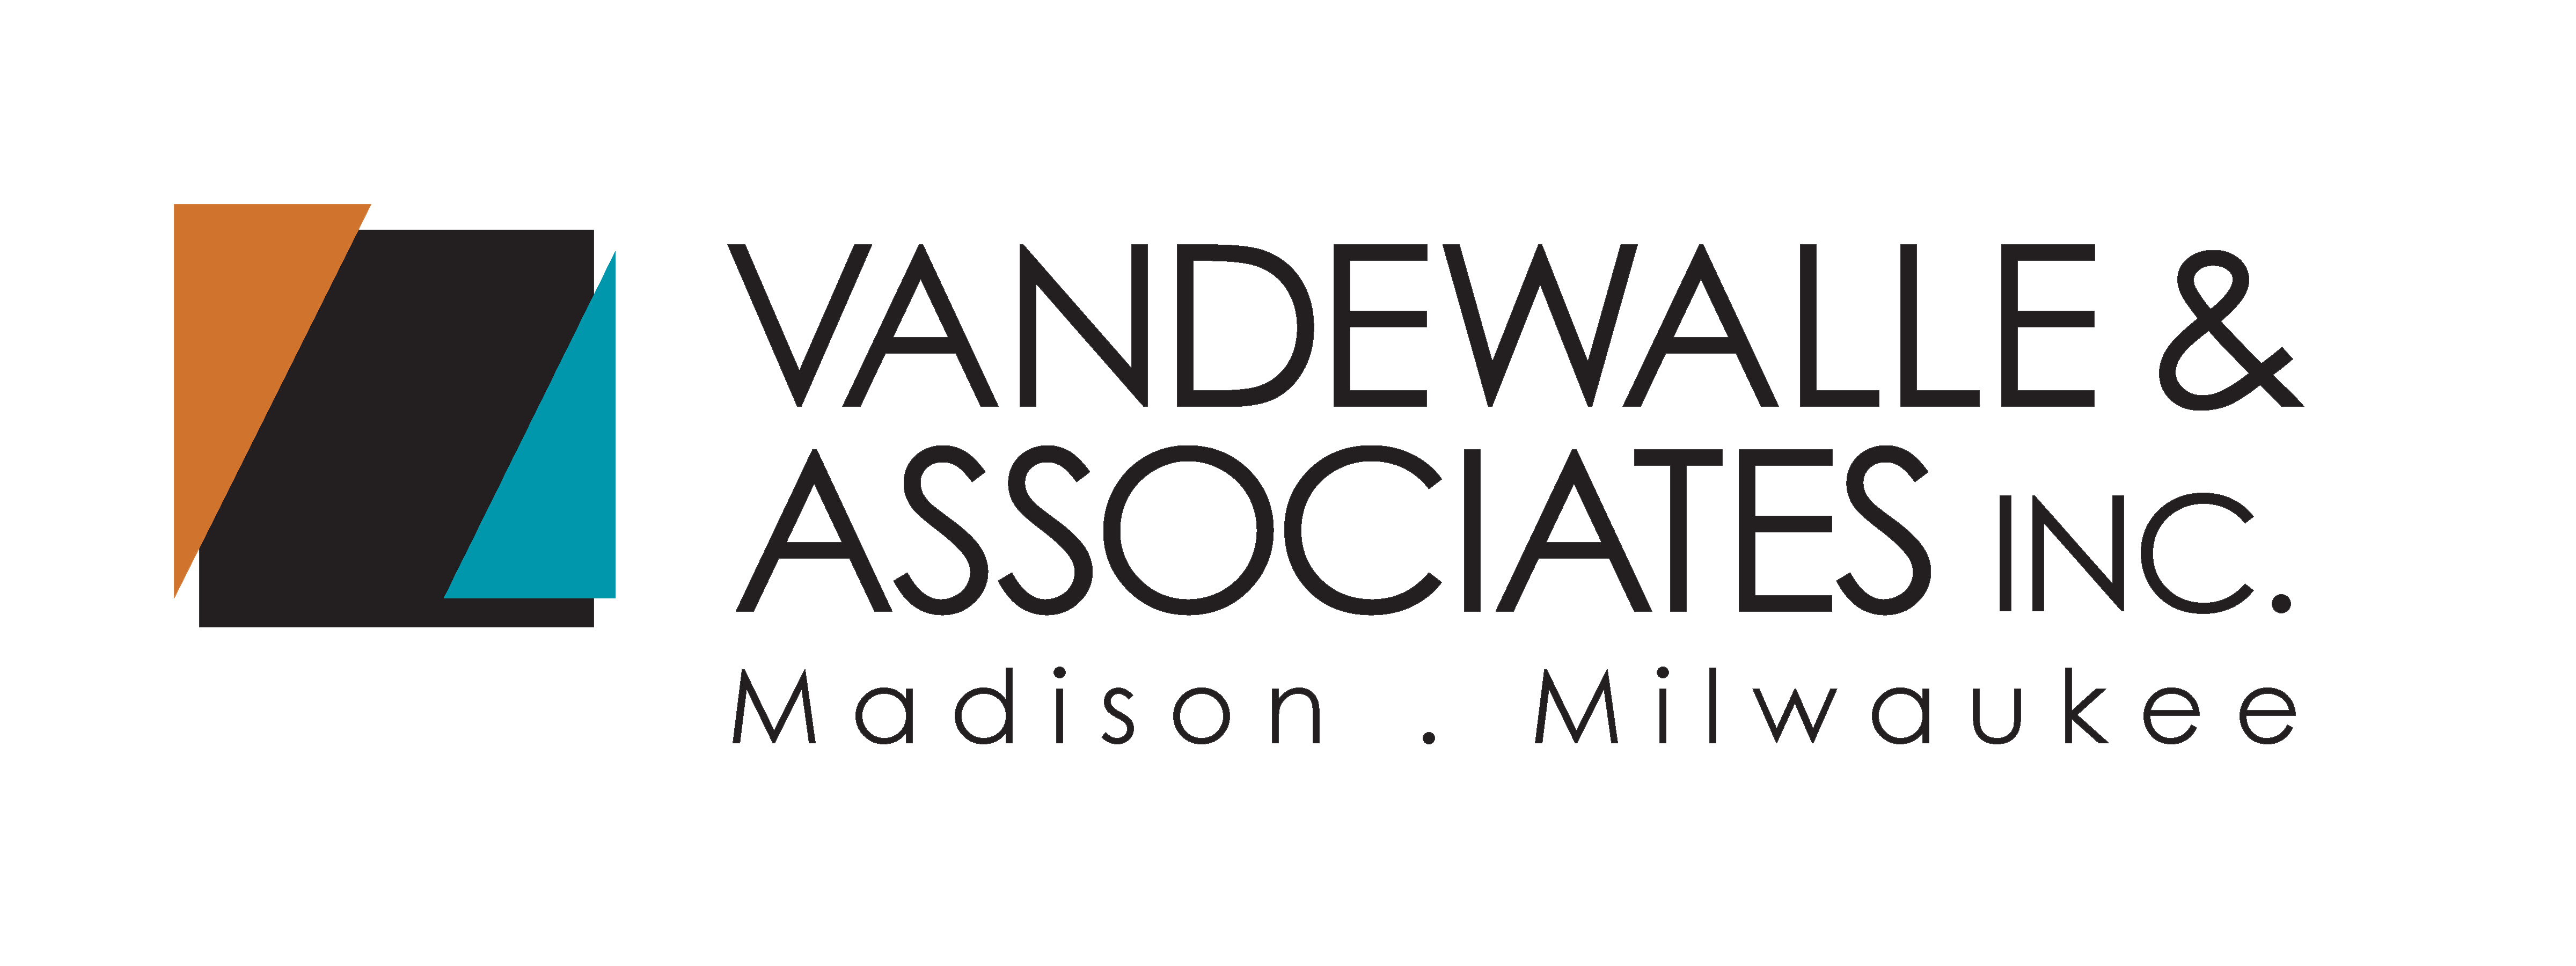 Vandewalle & Associates Inc.